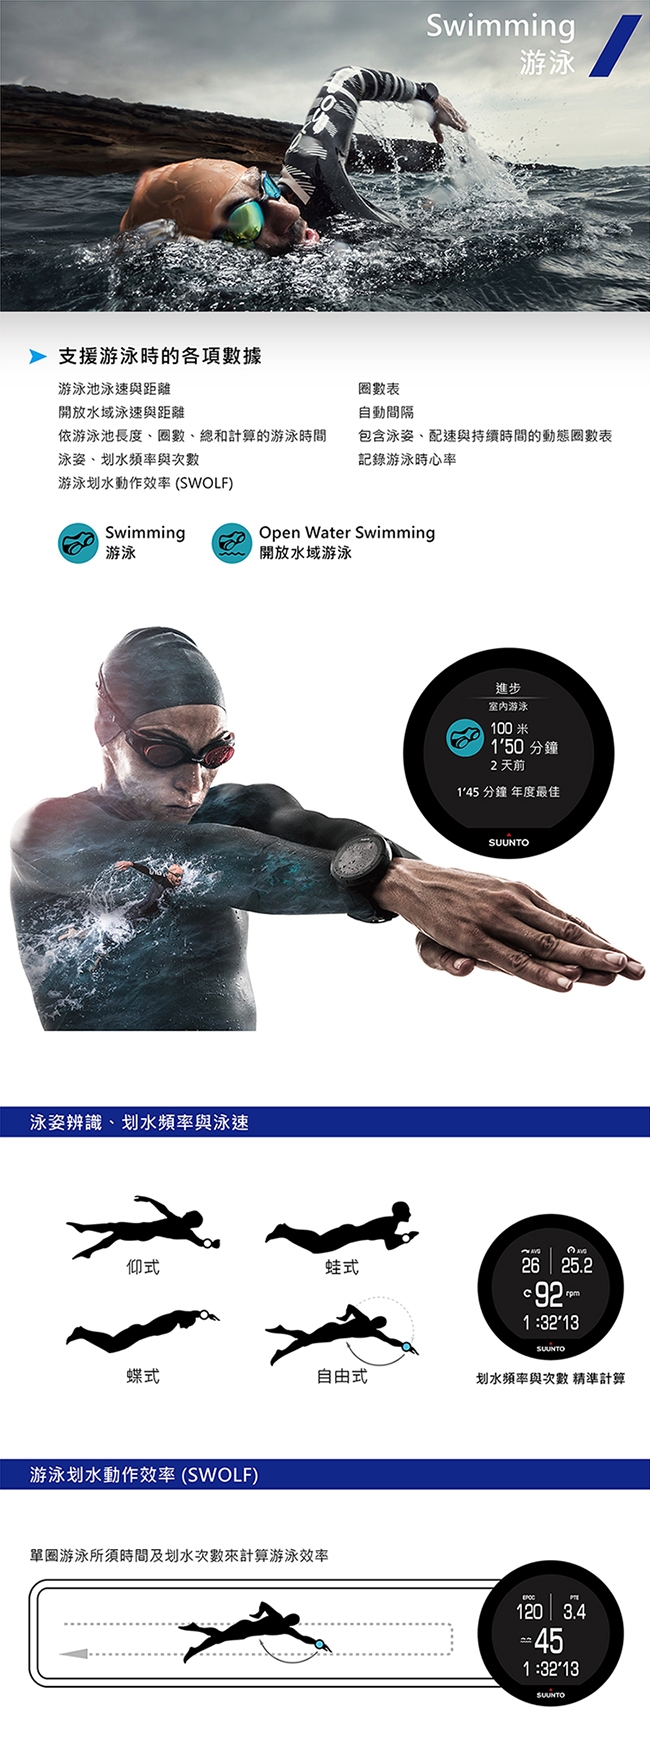 SuuntoSpartanTrainerWristHR全方位訓練的GPS運動腕錶-精鋼黑